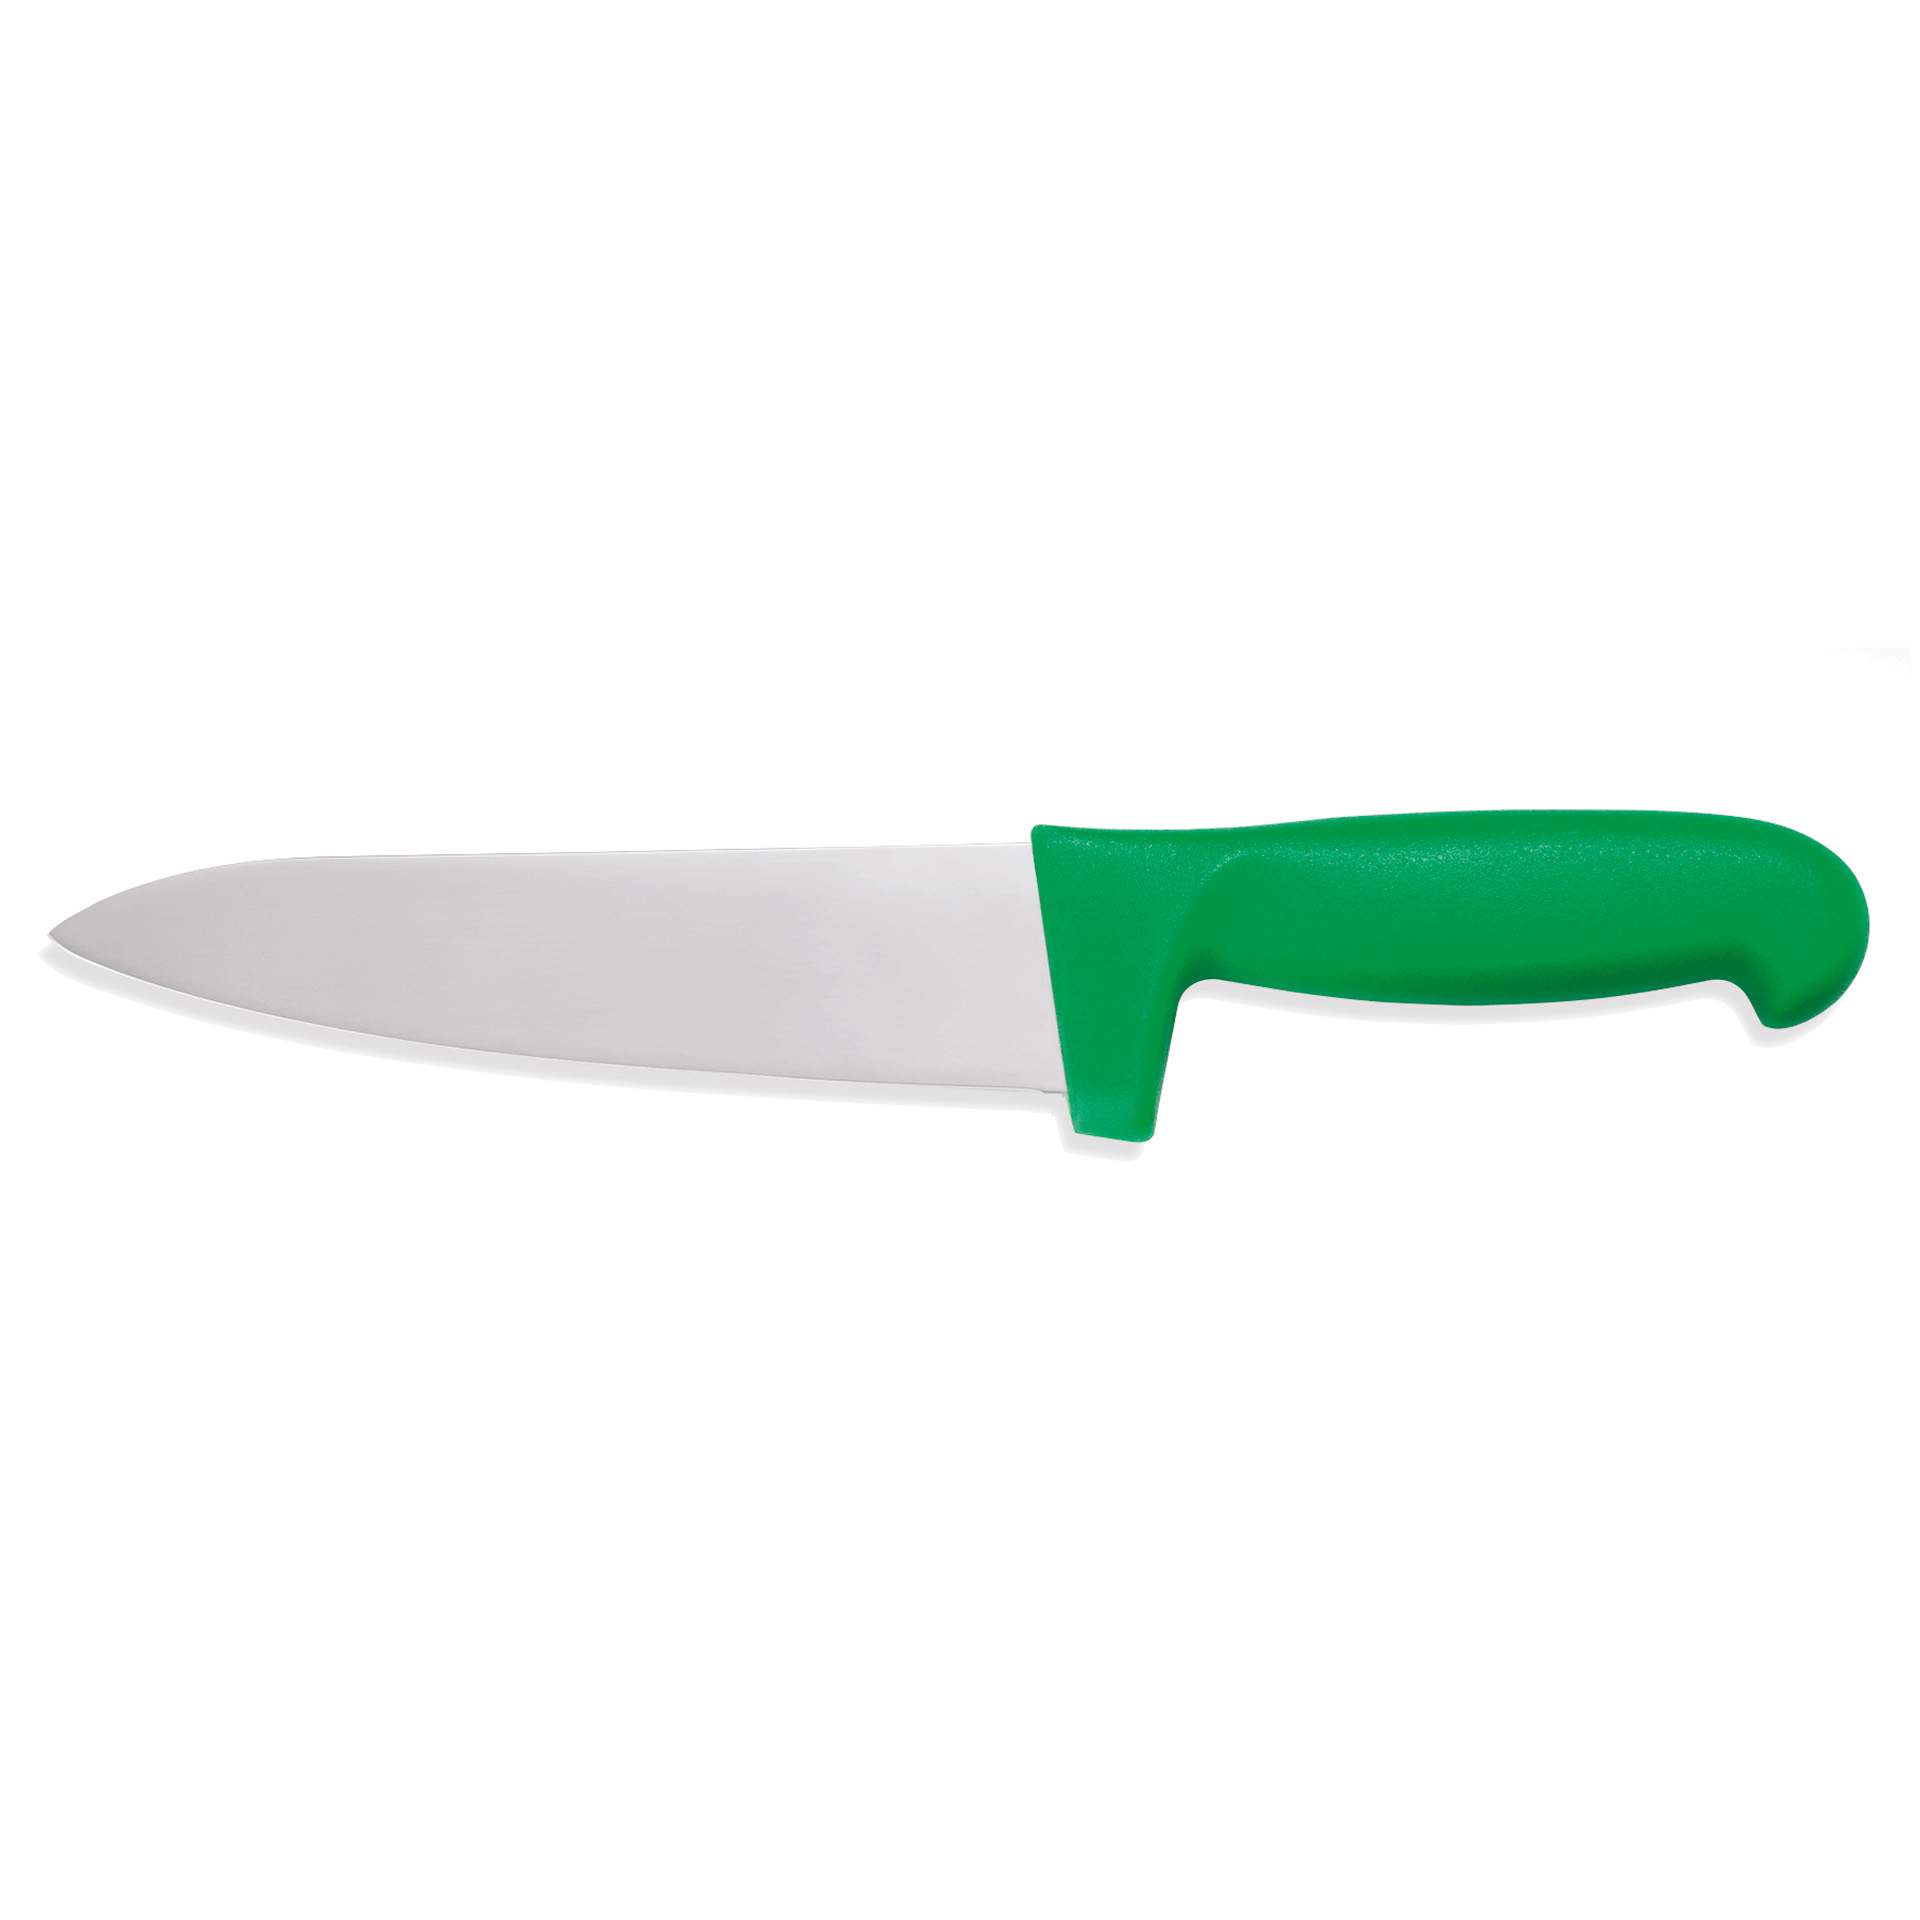 Kochmesser - mit Fingerschutz - Serie HACCP - grün - Klingenlänge 18 cm - Edelstahl - 6900185-A